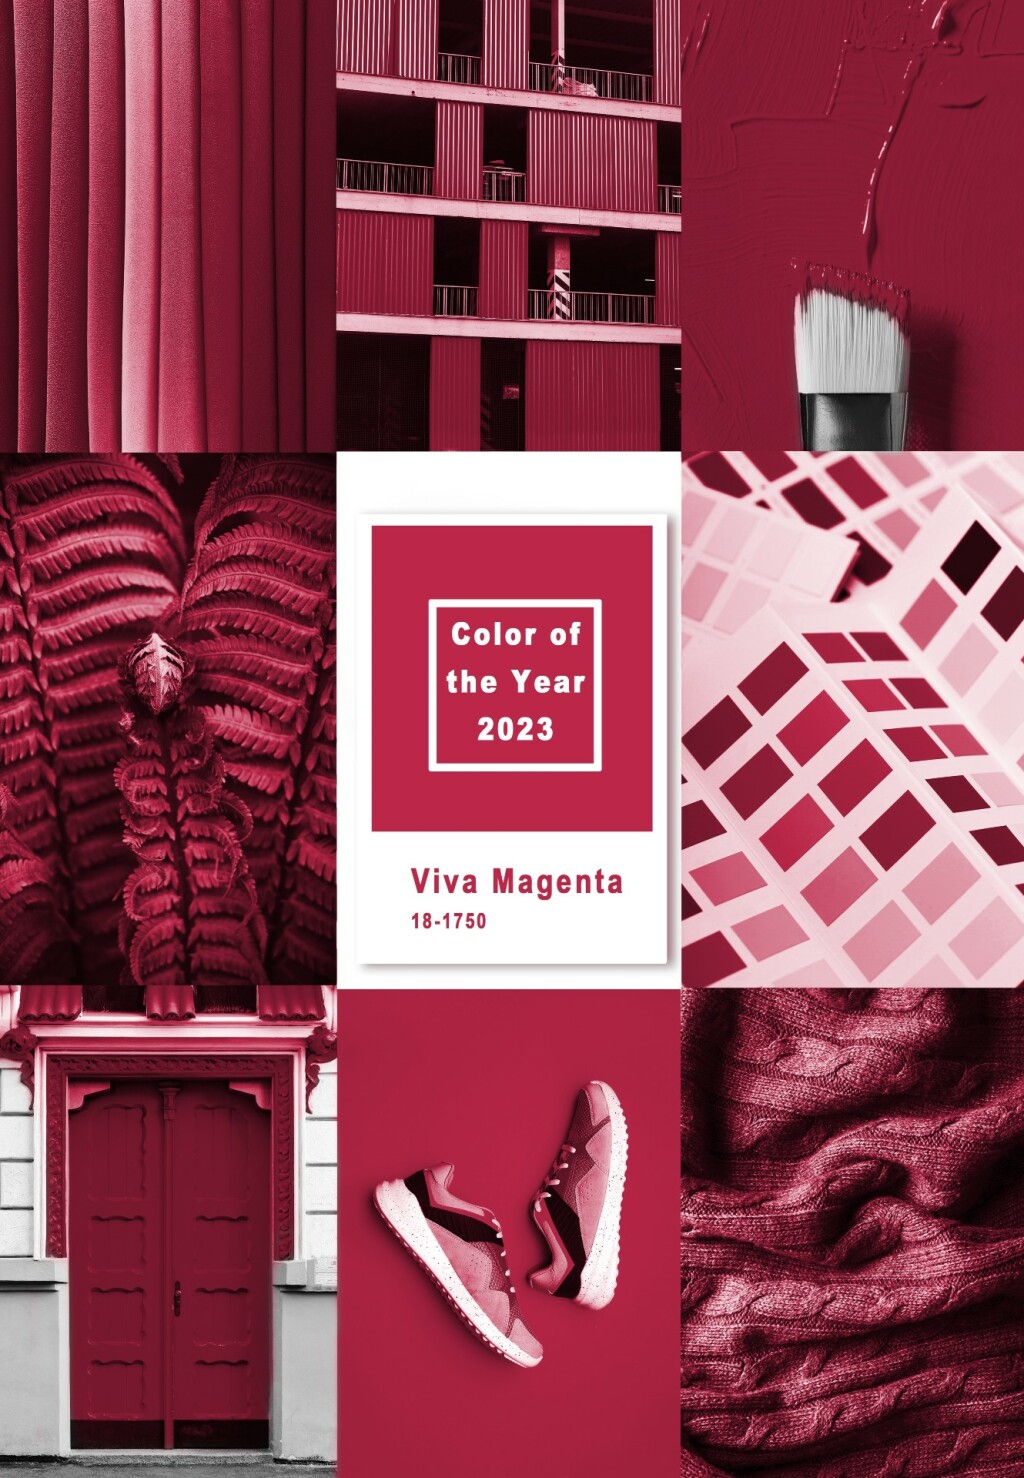 Institut Pantone proglasio je 18-1750 Viva Magenta bojom godine za 2023.